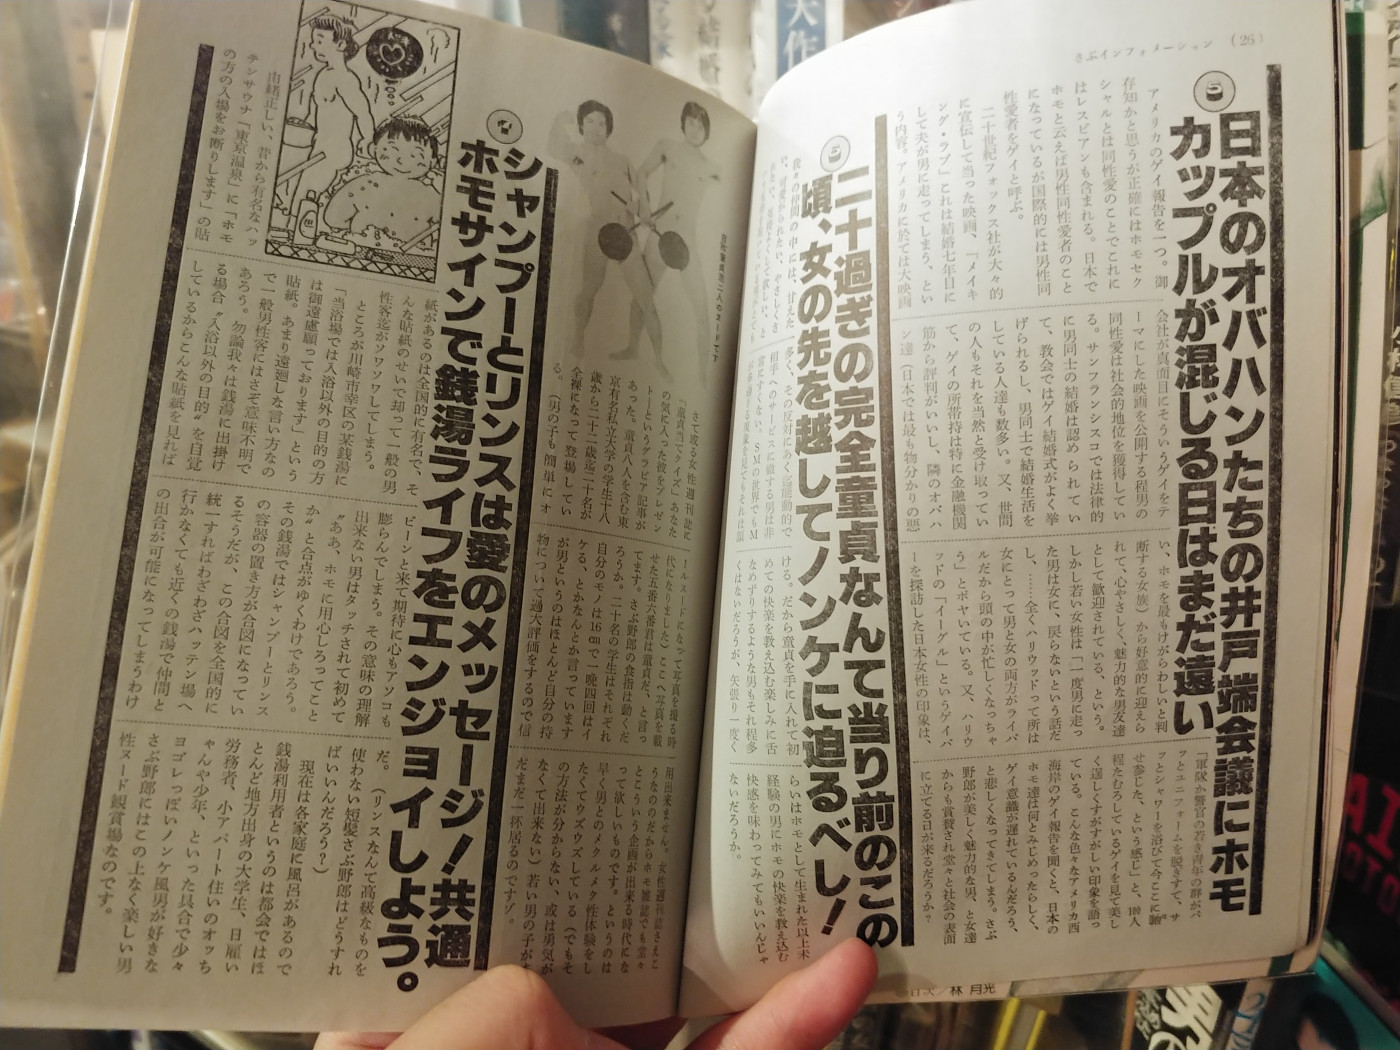 ホモ本ブックカフェ オカマルト」で日本初のゲイ雑誌をチェック